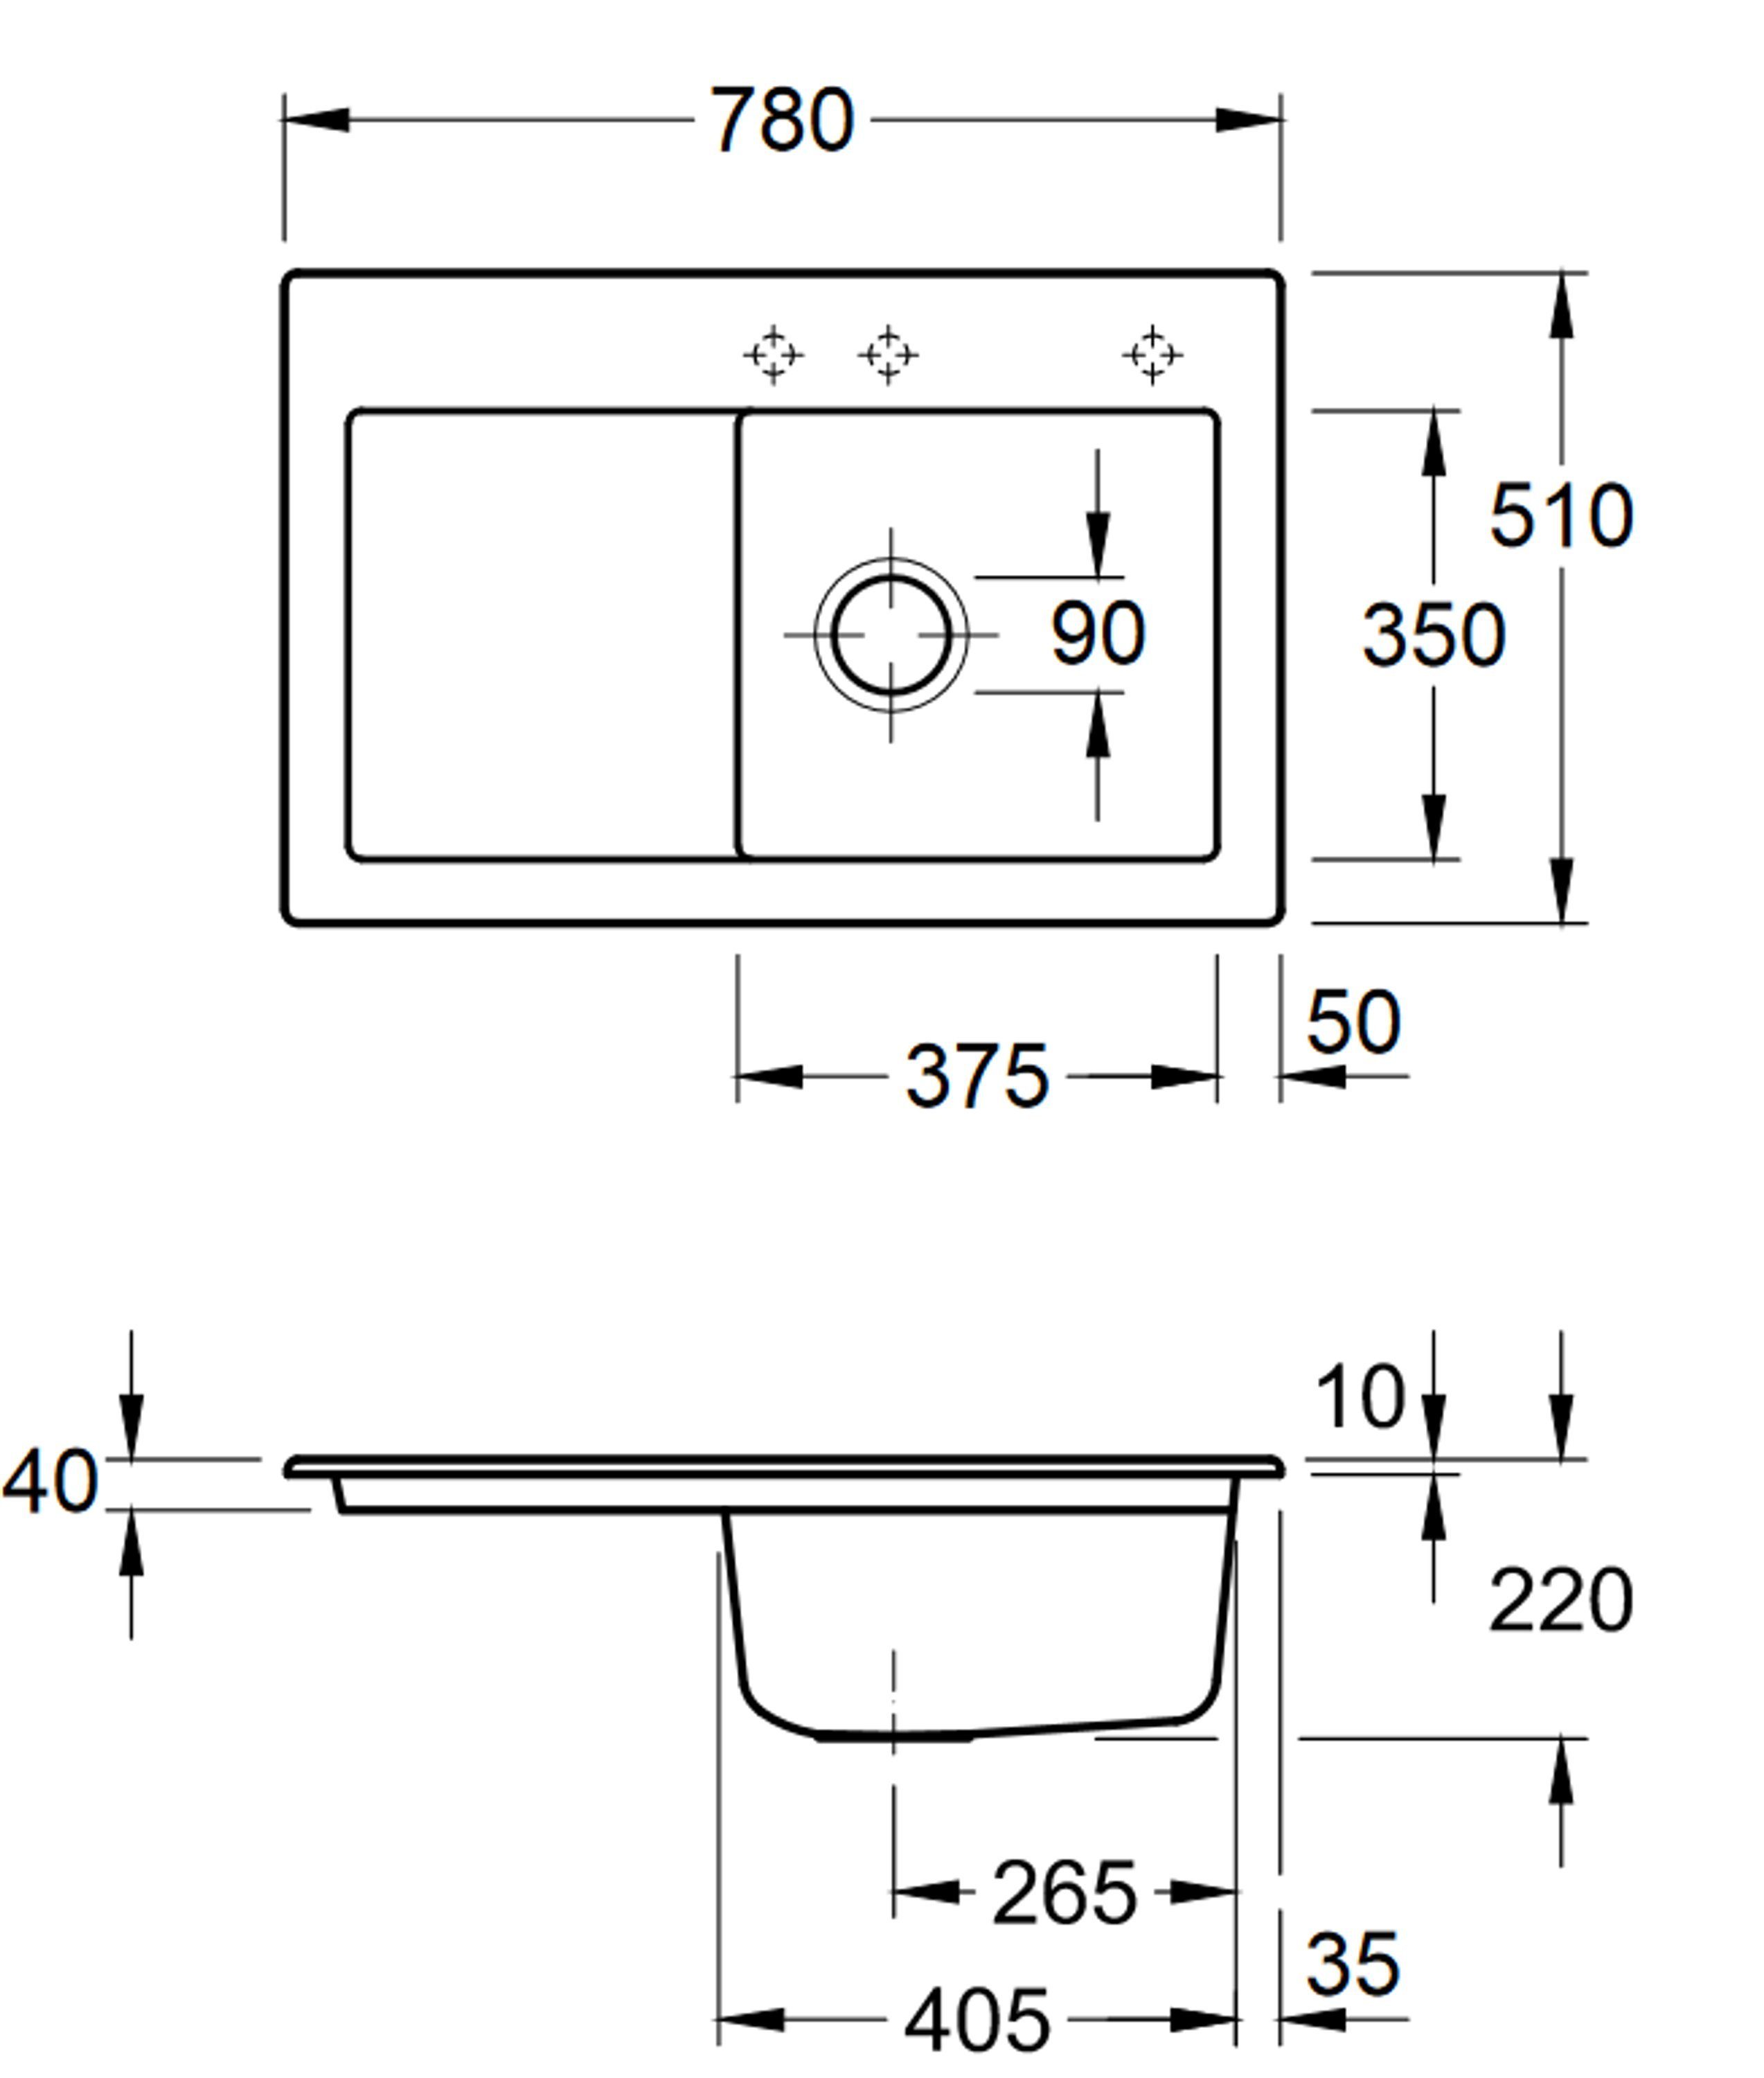 Villeroy & Boch links 78/22 rechts Küchenspüle Subway AM, Serie, 02 cm, 6714 möglich Rechteckig, Becken und